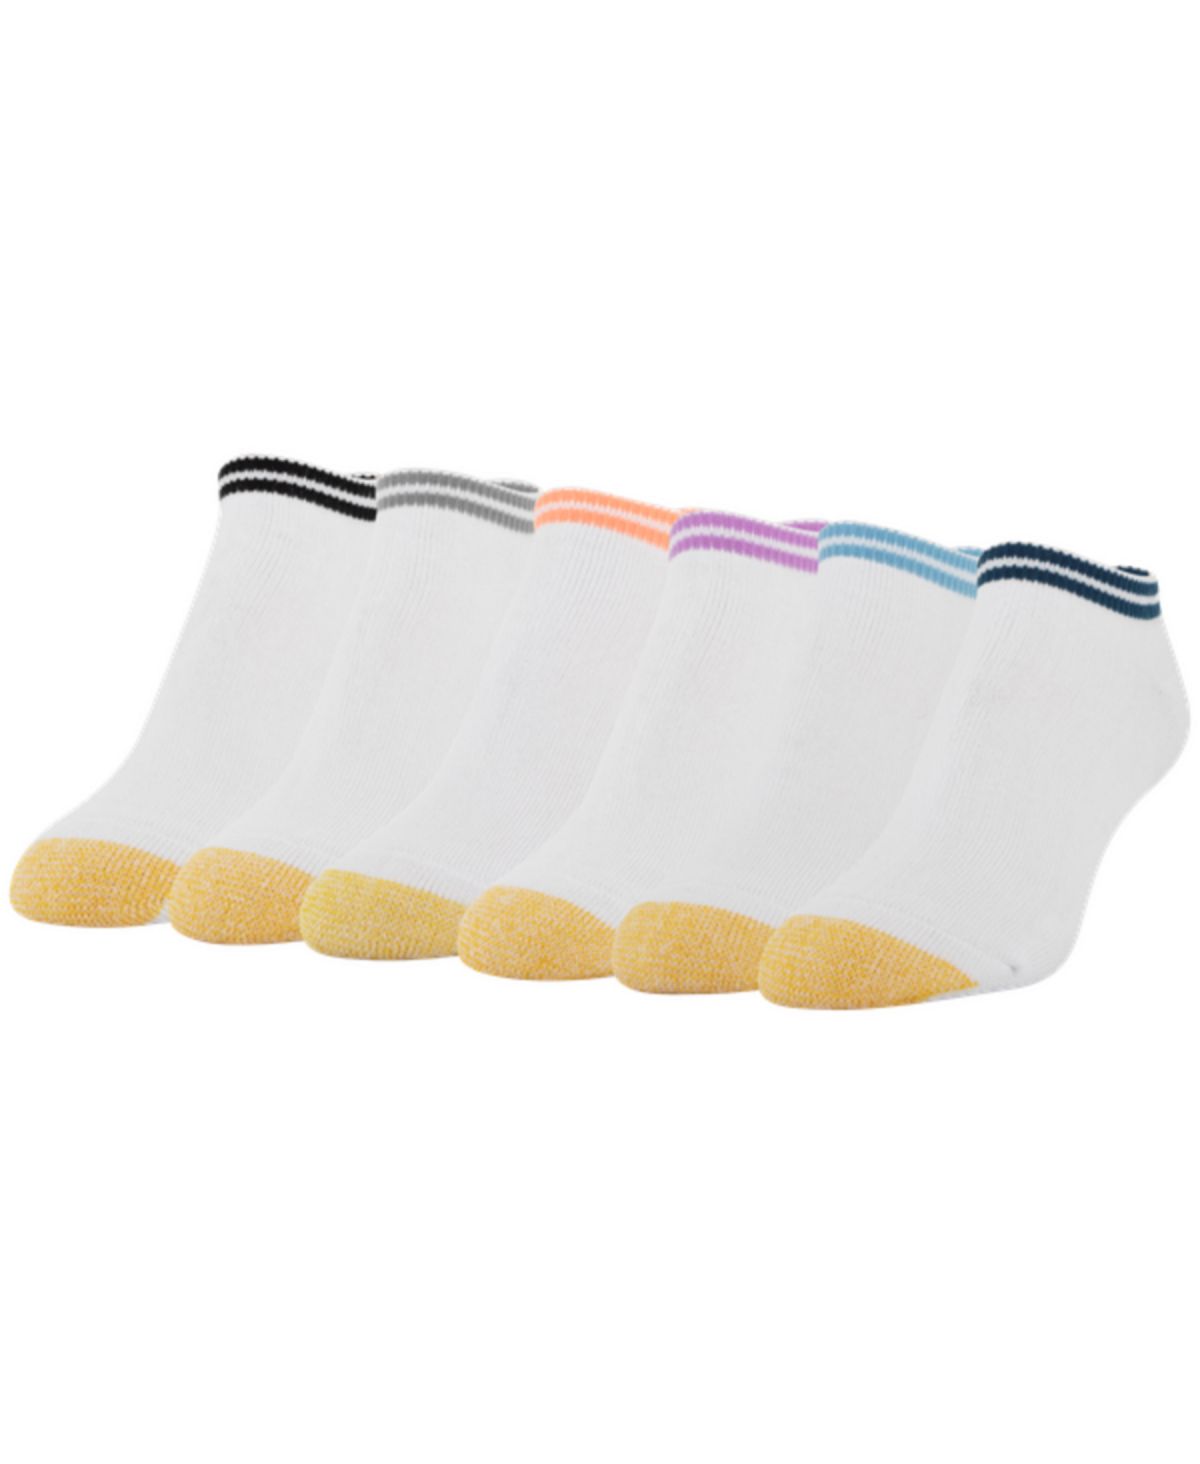 Женские повседневные носки с подушечкой до щиколотки (6 пар), также доступны в расширенных размерах Gold Toe кроссовки ewing 33 white black deep blue